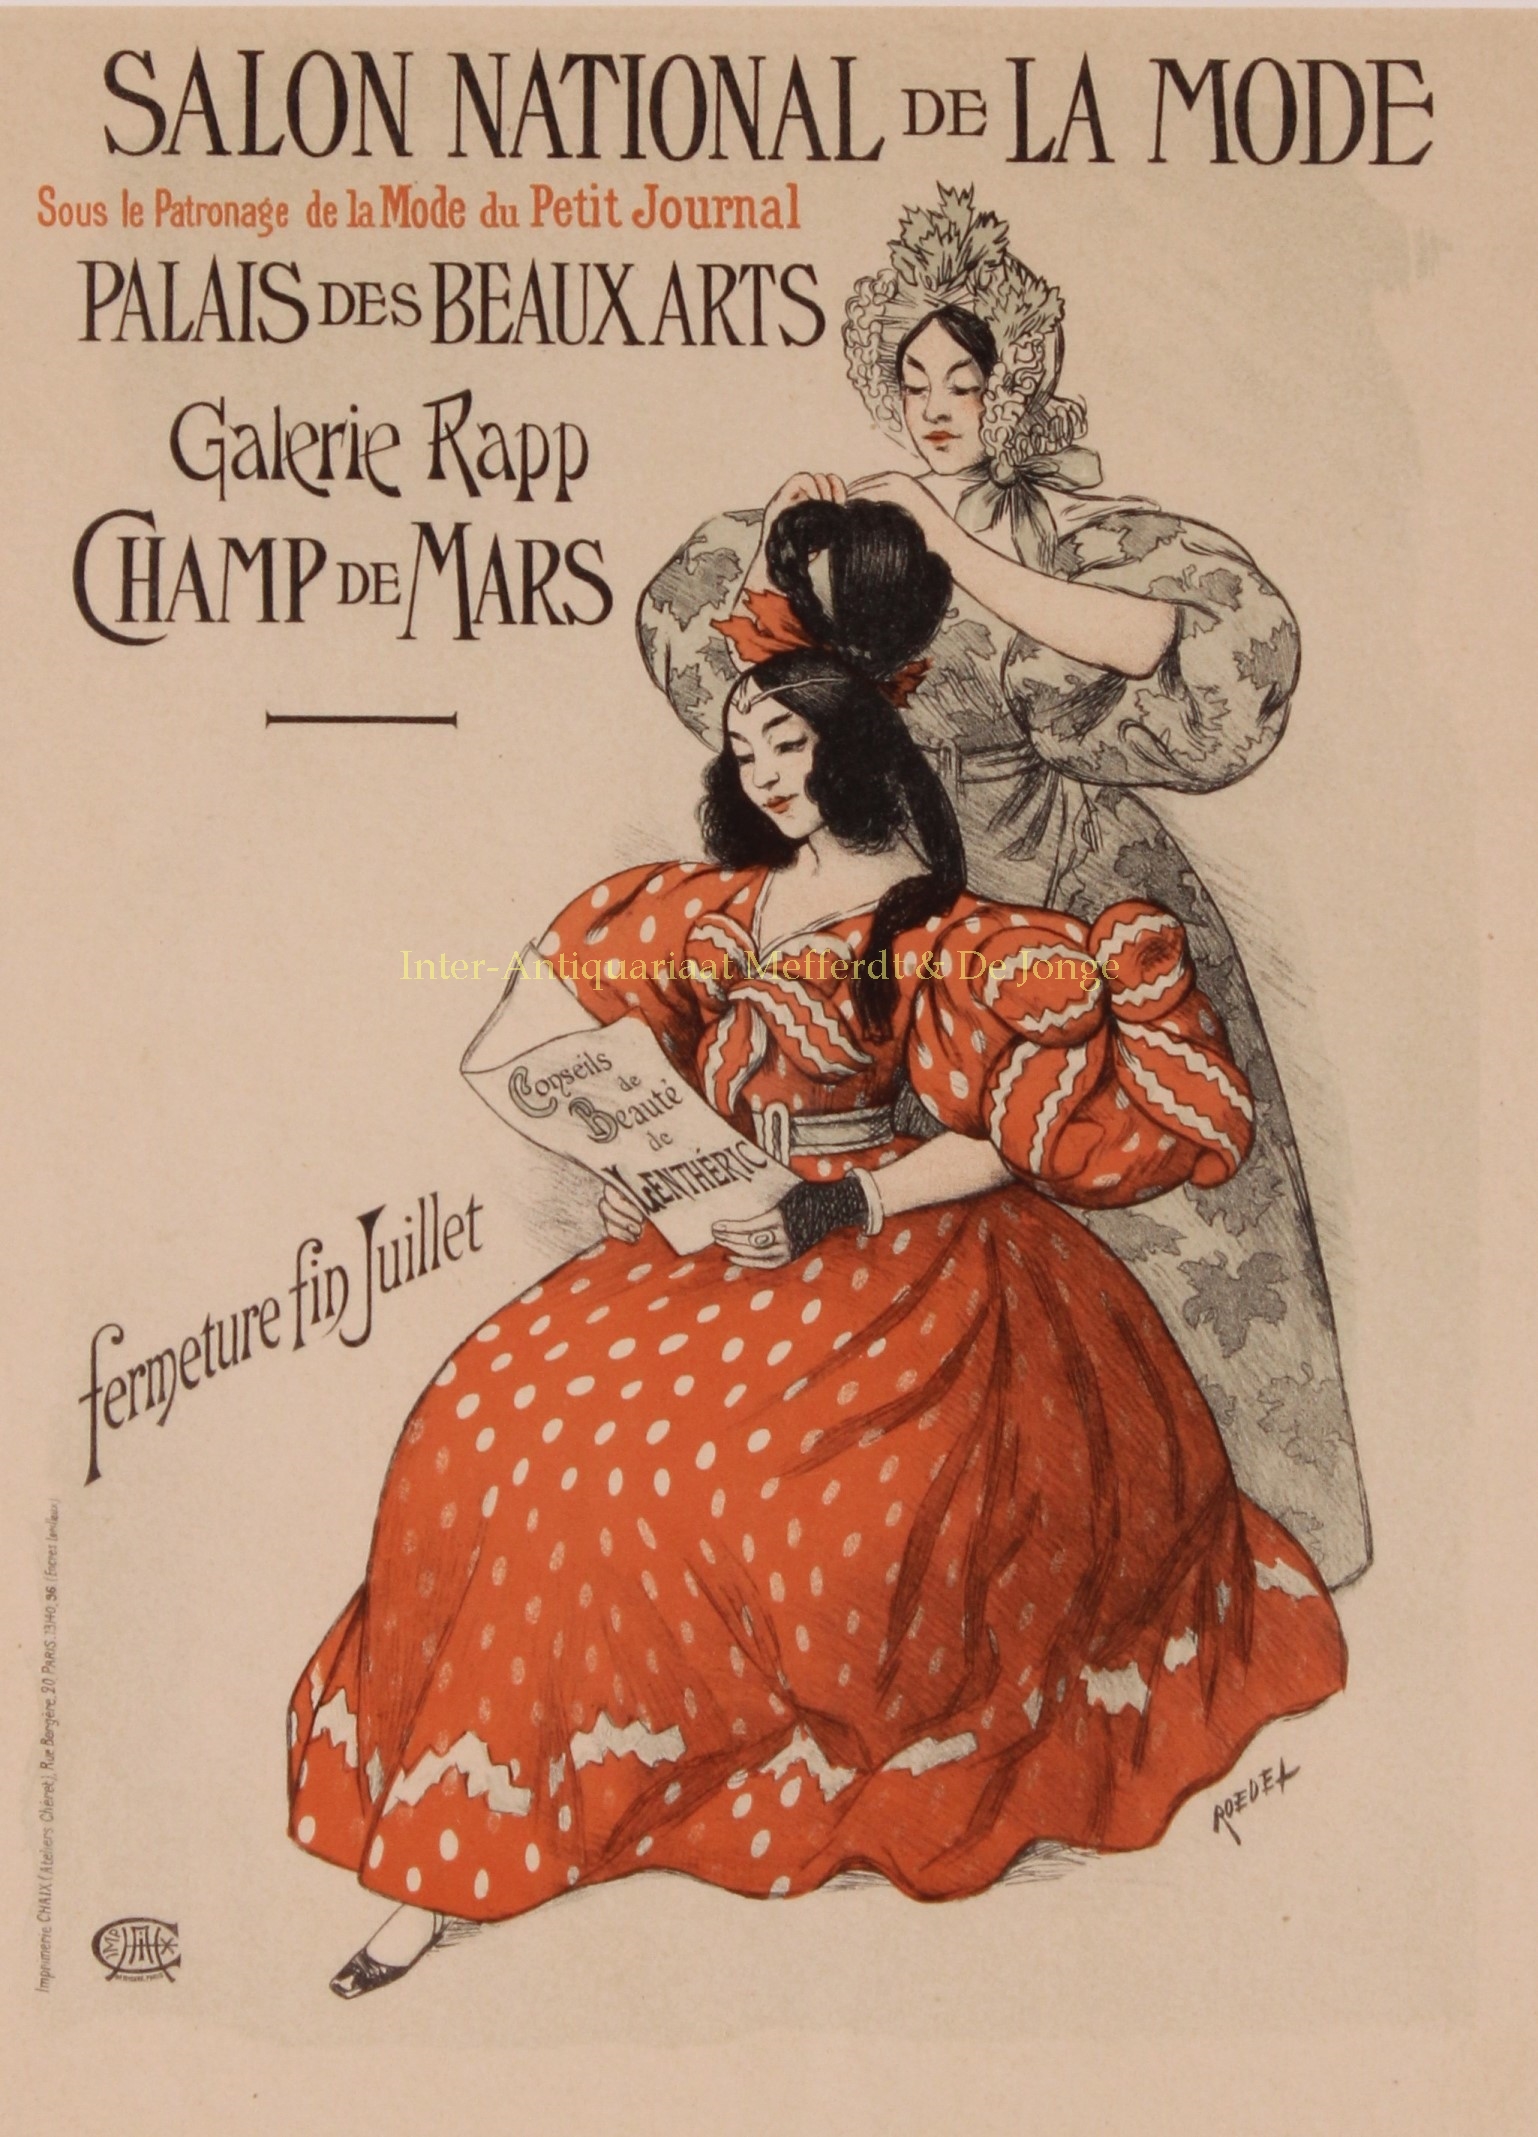  - Salon National de la Mode - August Roedel, 1895-1900